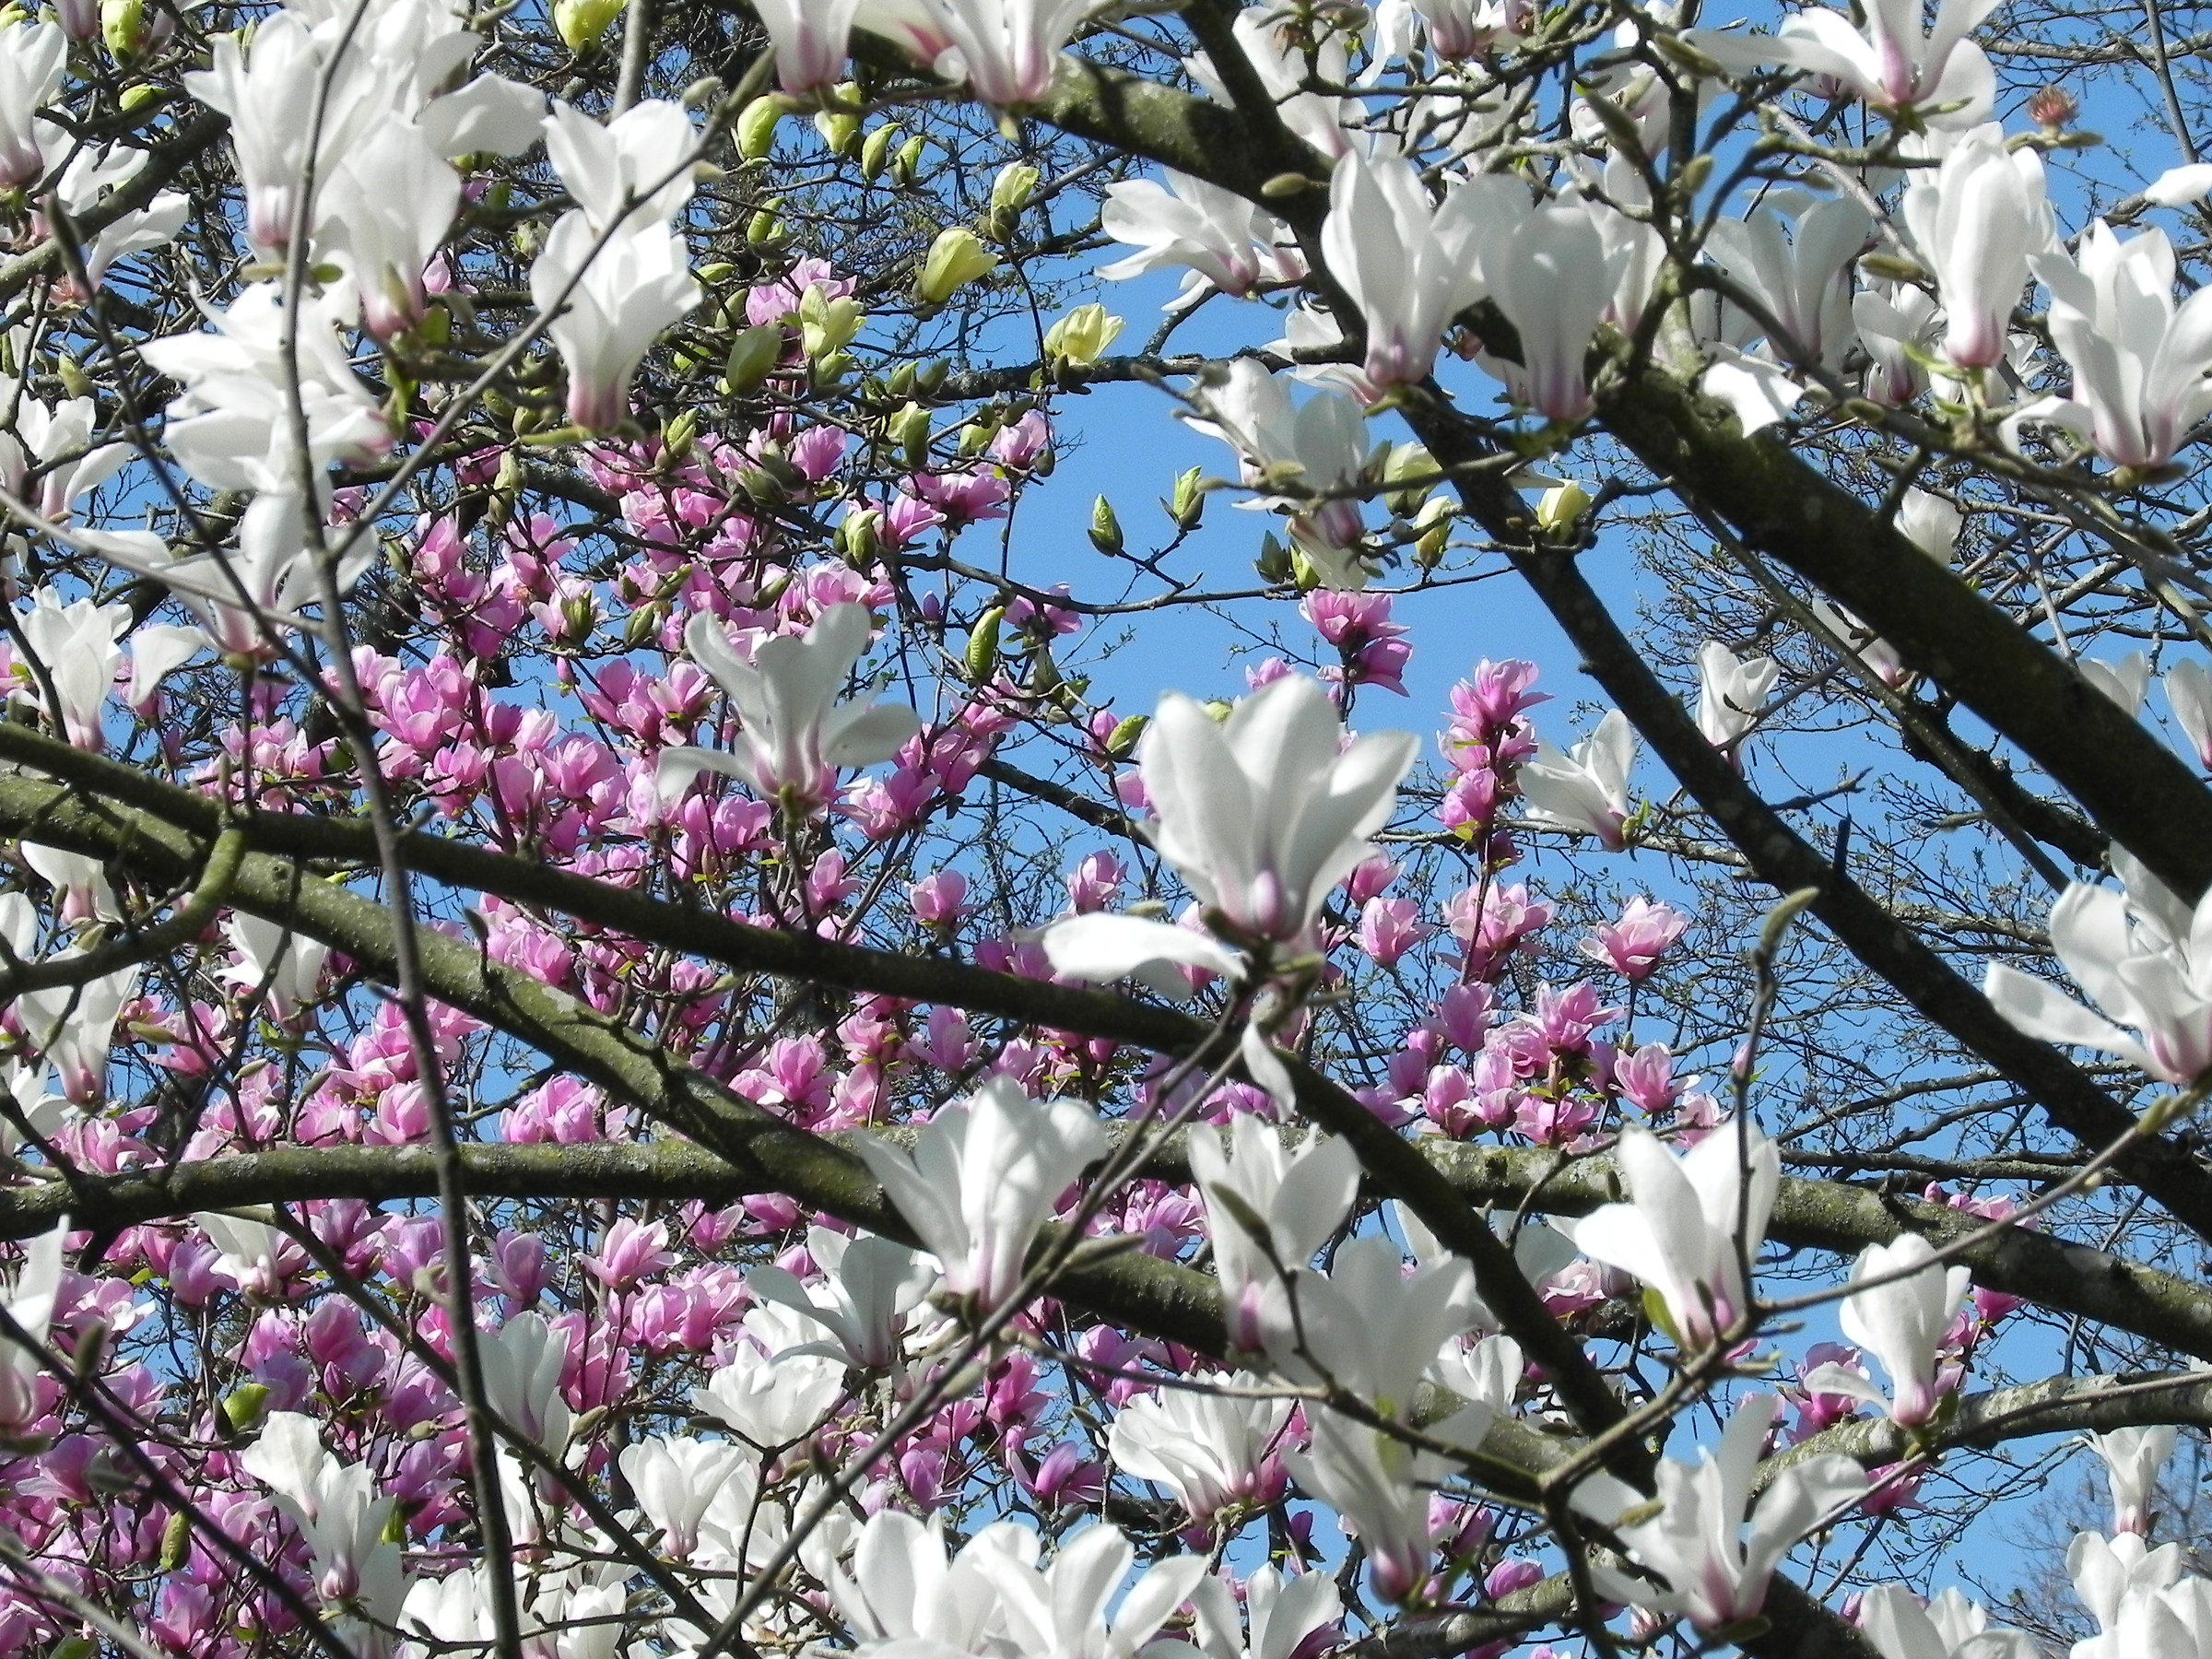 Ton of magnolia blossoms...